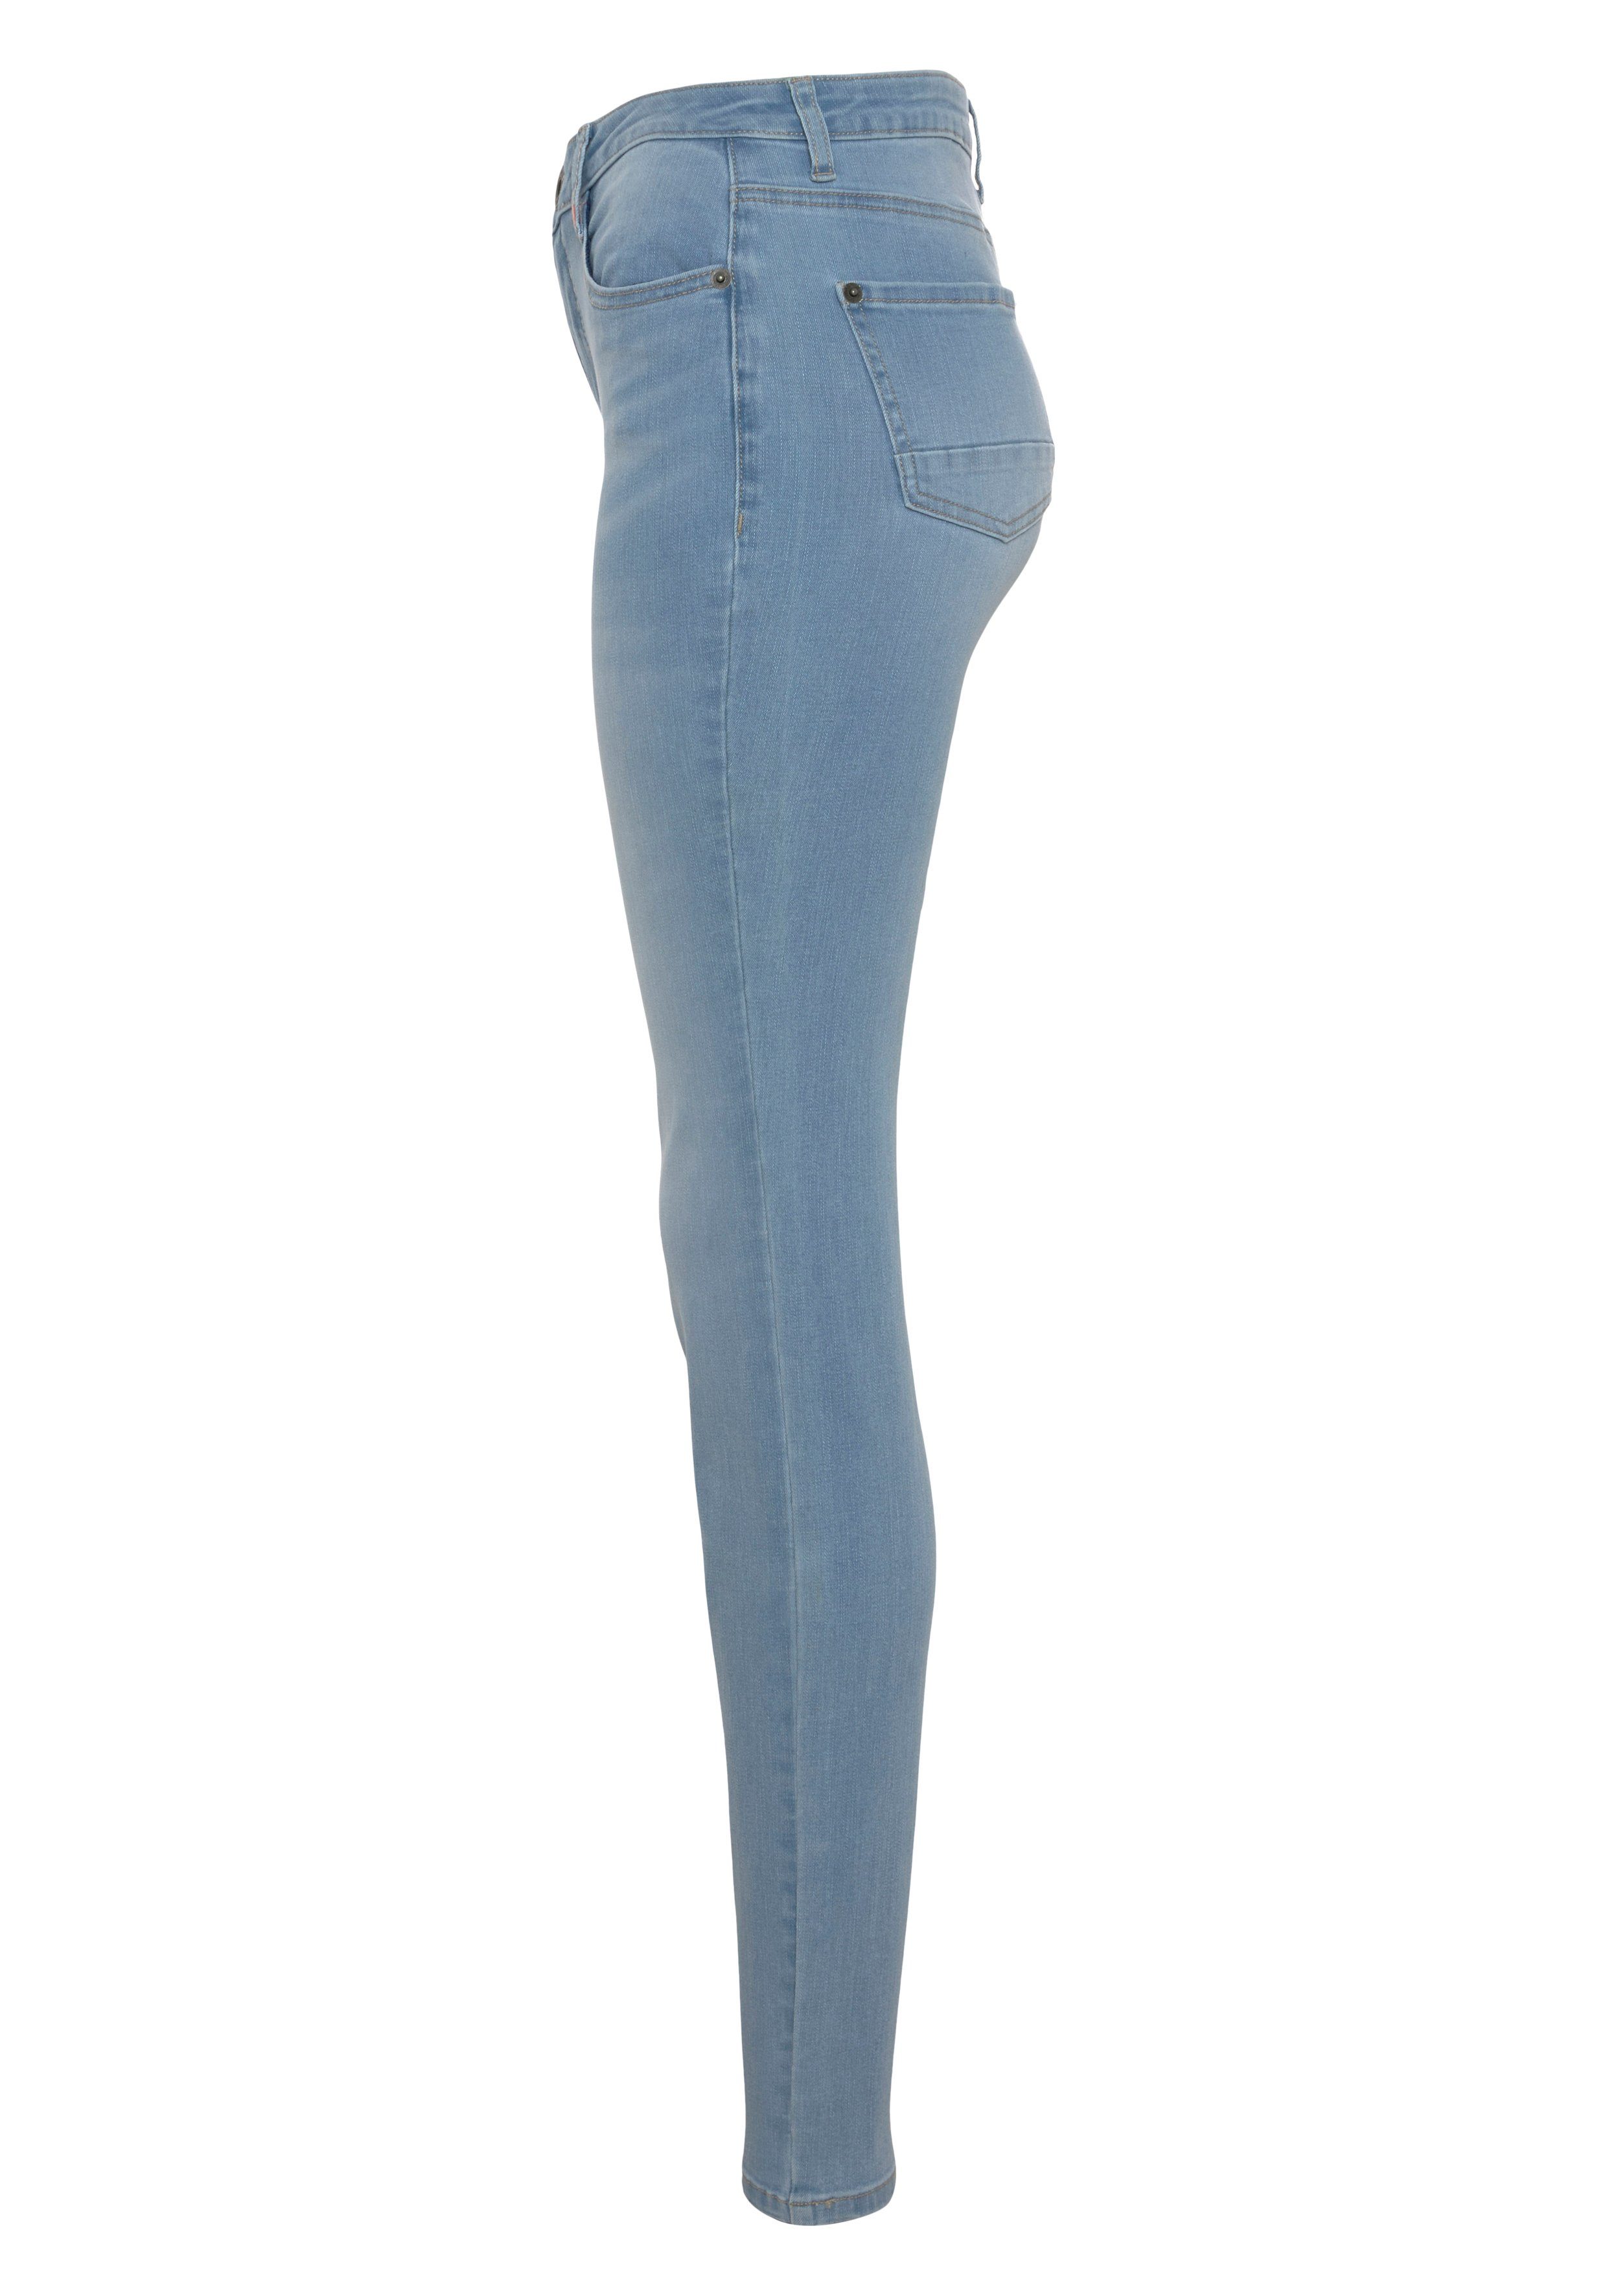 & used High-waist-Jeans light Alife Slim-Fit NolaAK Kickin KOLLEKTION NEUE blue